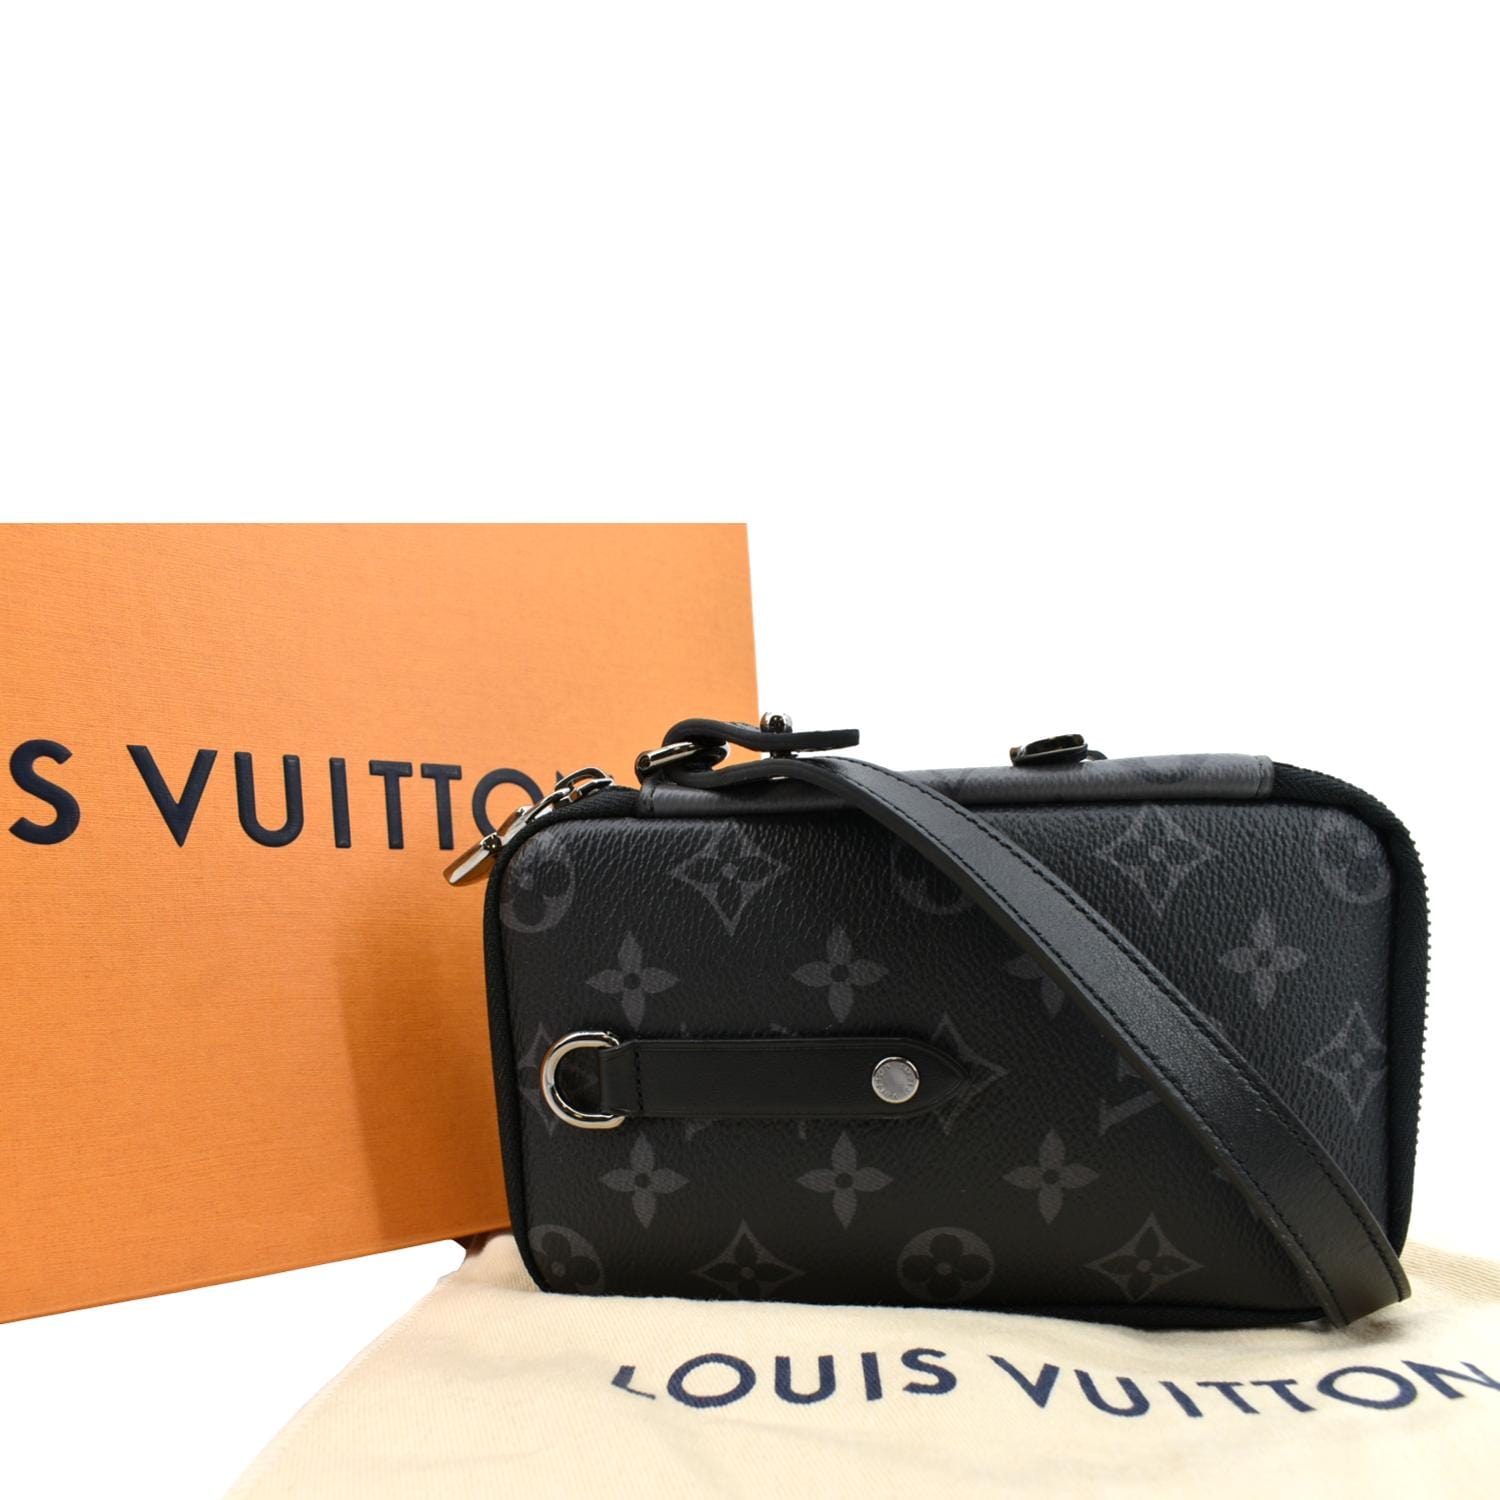 Louis Vuitton Unboxing: Monogram Eclipse Reverse Double Phone